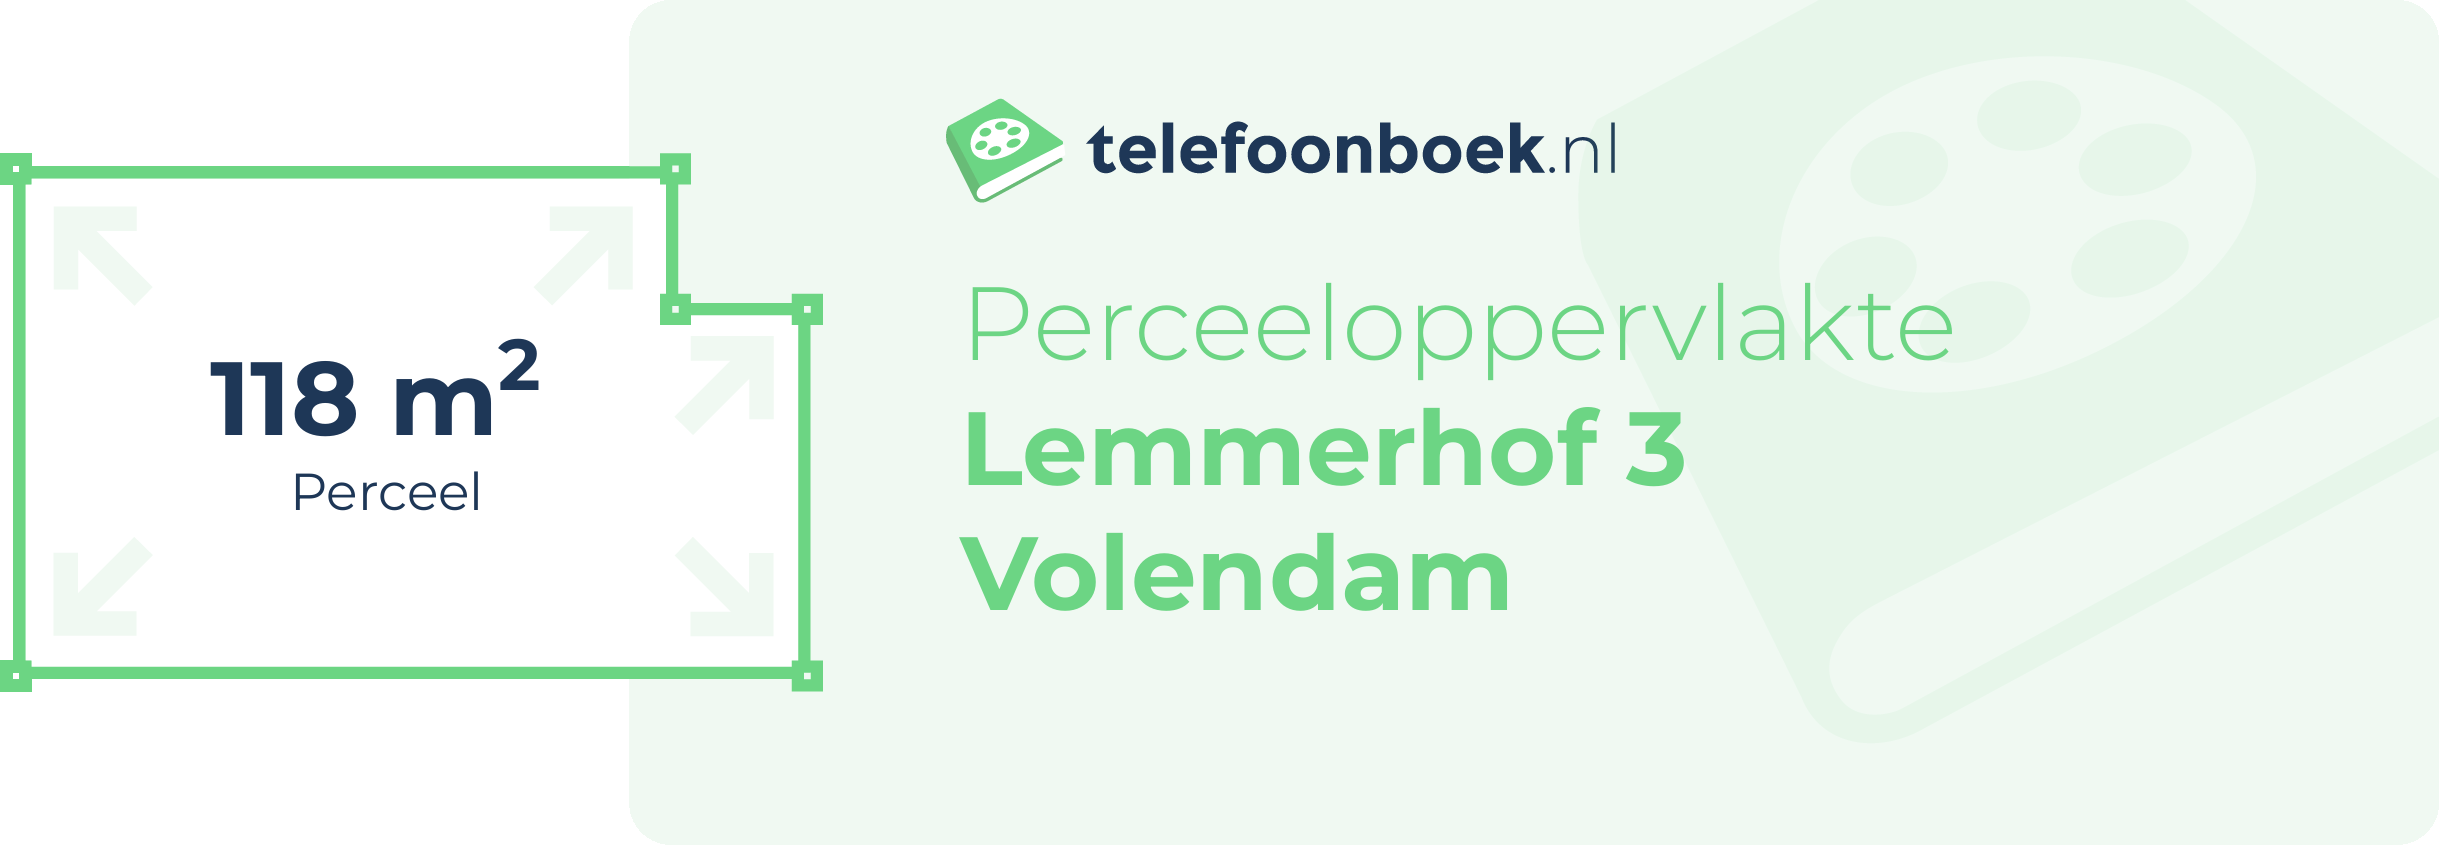 Perceeloppervlakte Lemmerhof 3 Volendam